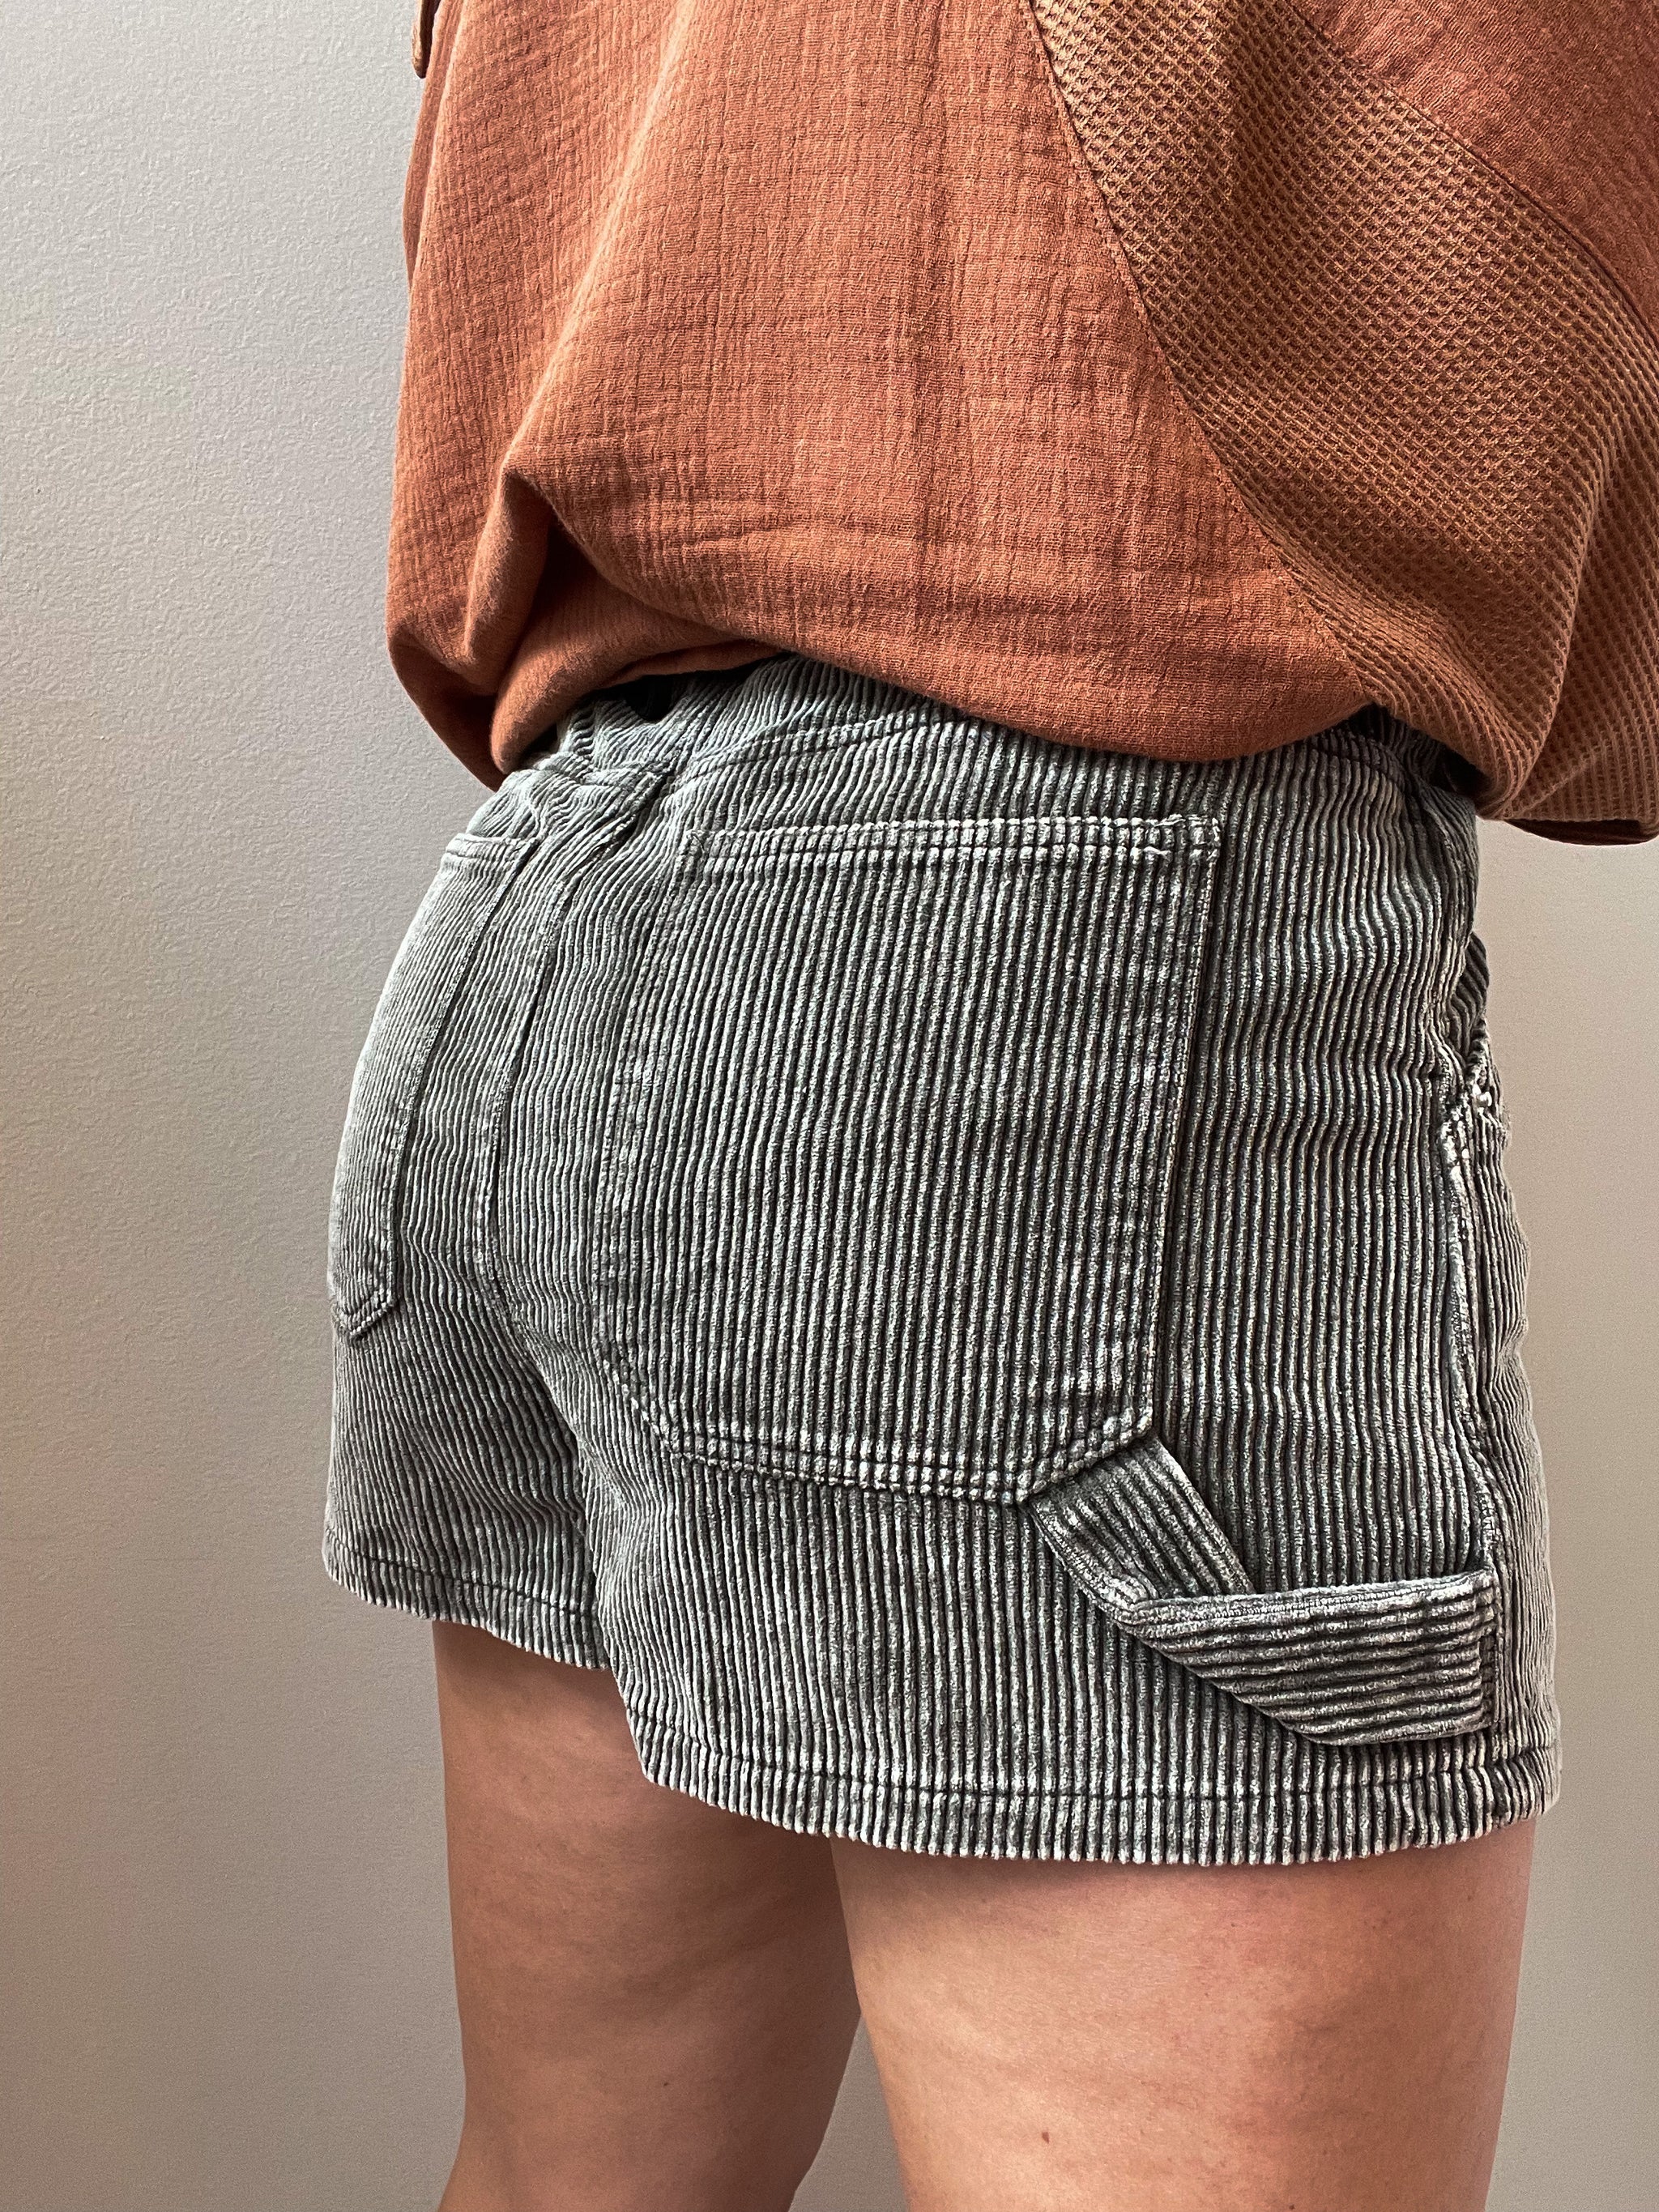 Light Washed Corduroy Shorts W/Side Pocket